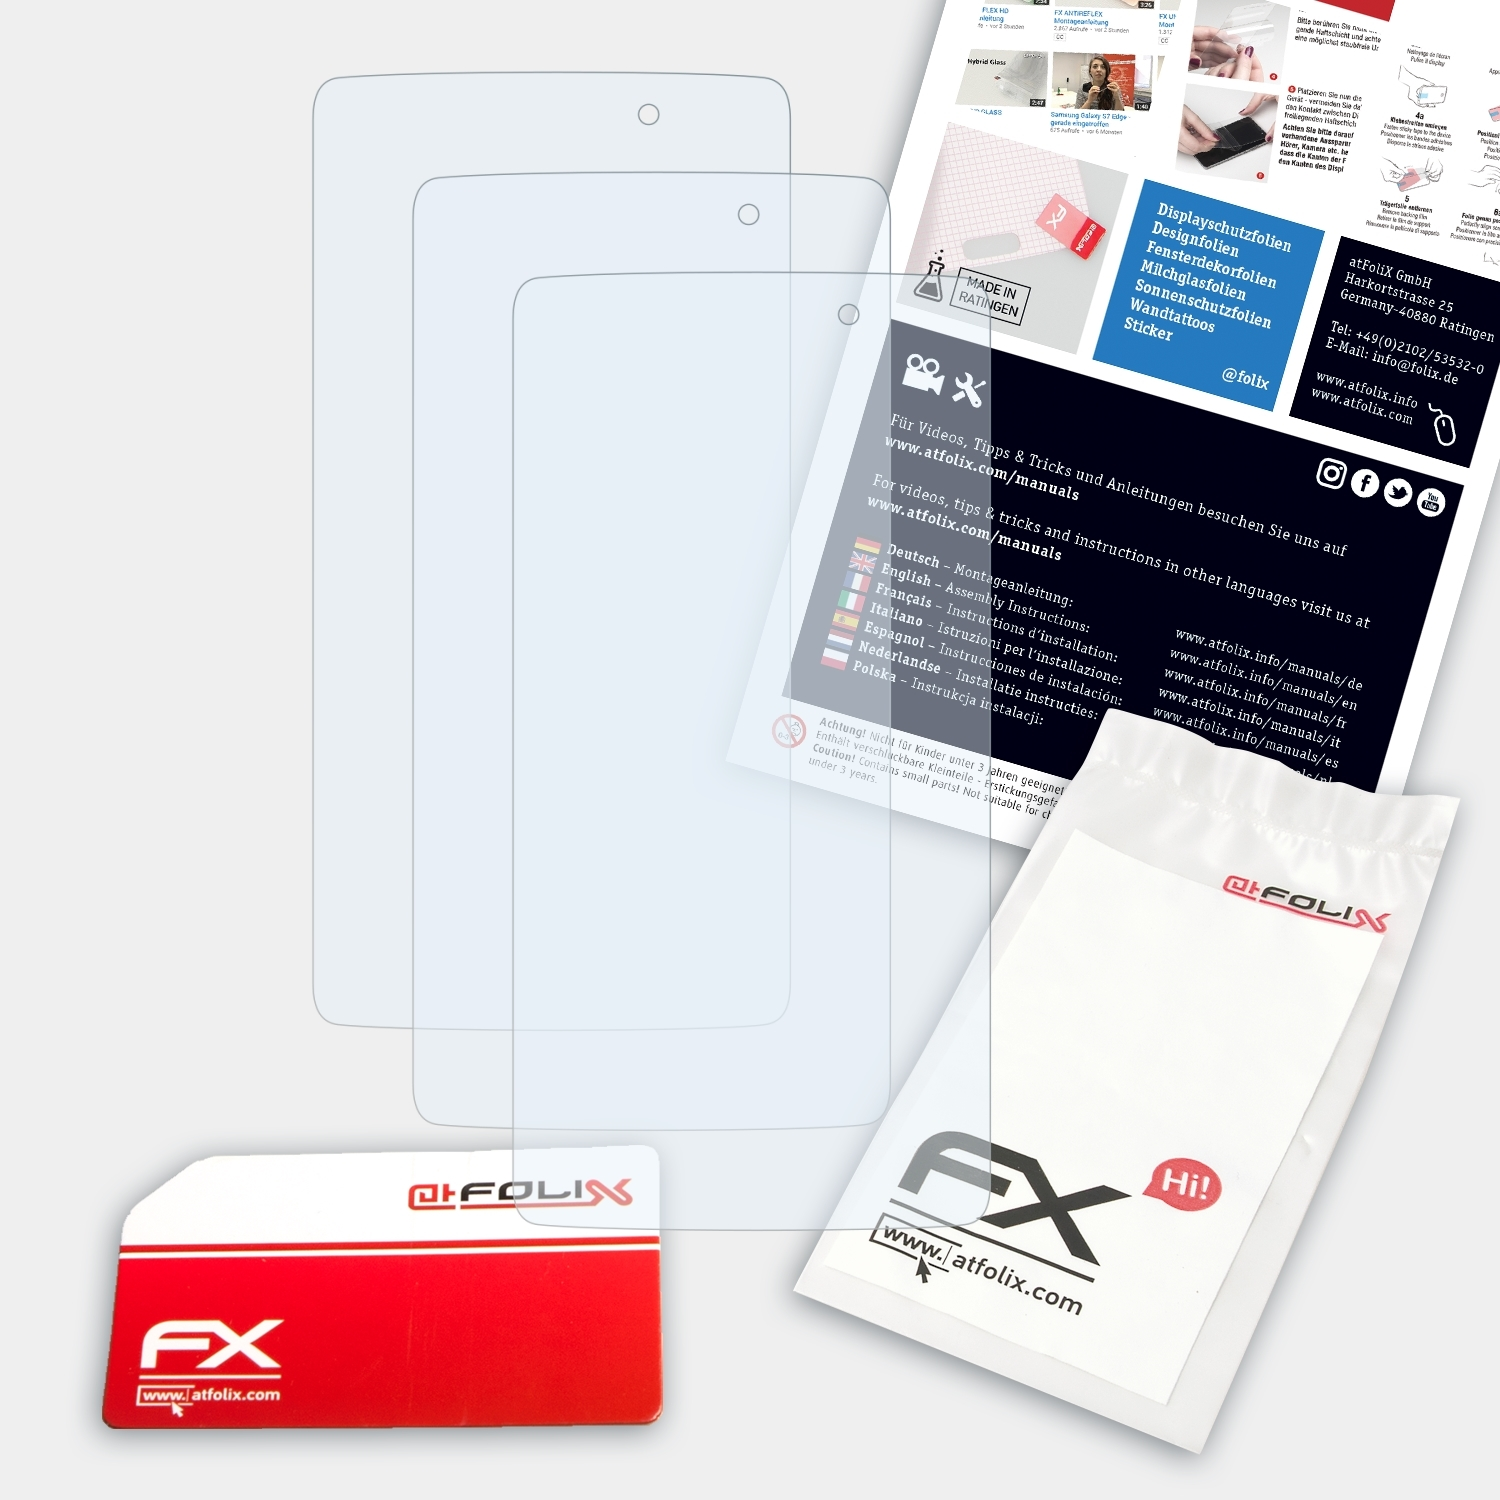 ATFOLIX 3x FX-Clear Displayschutz(für (4.7)) Idol Alcatel Touch 3 One